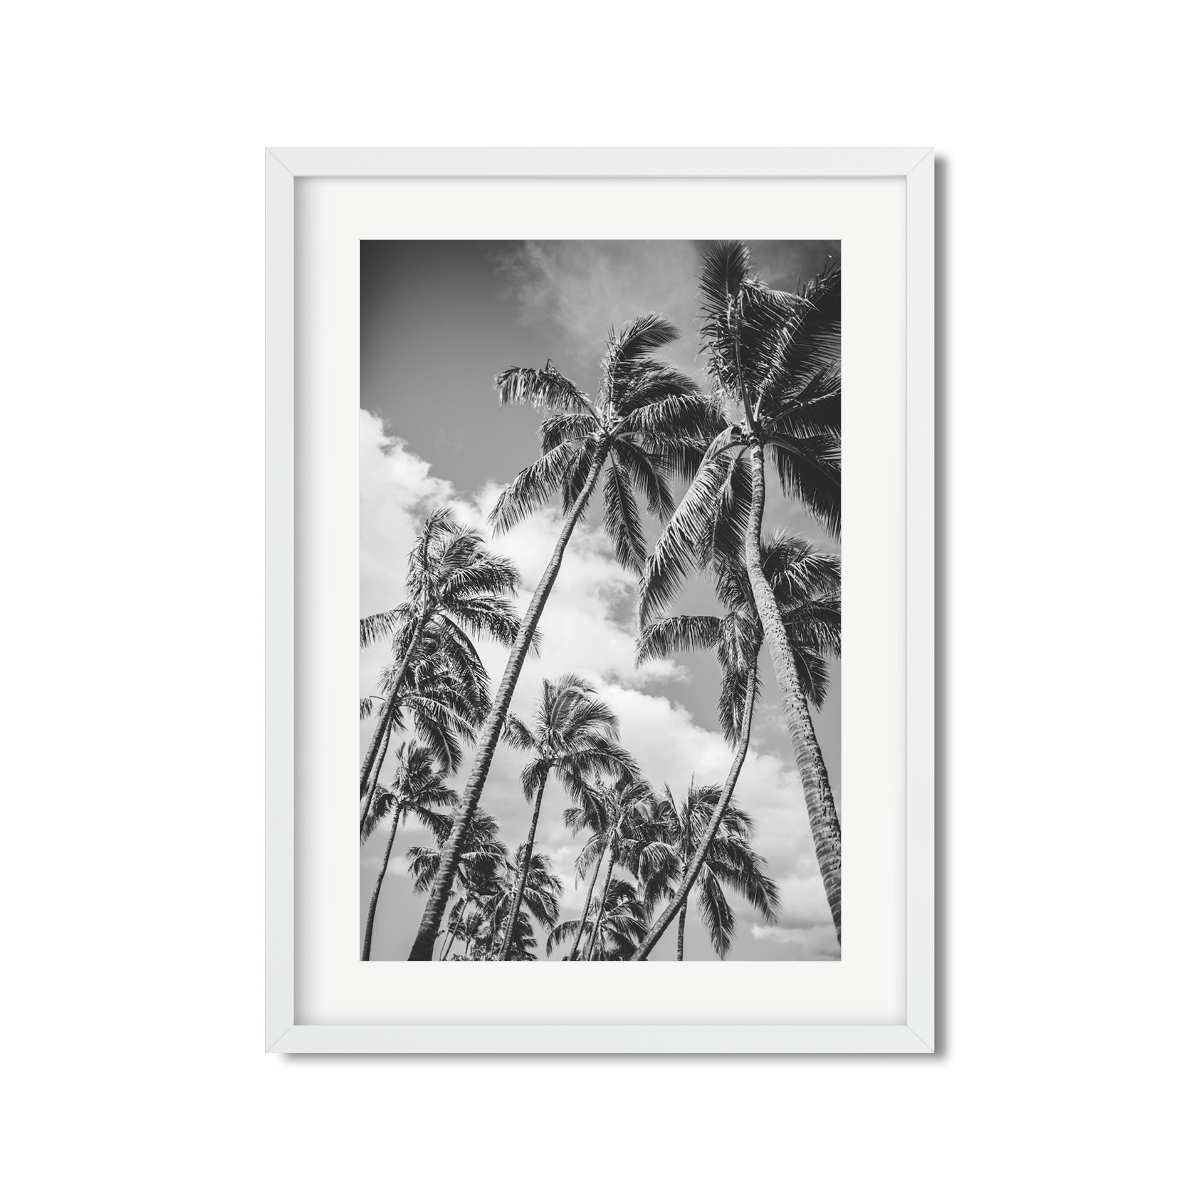 HAWAIIAN PALM TREES NO. 21